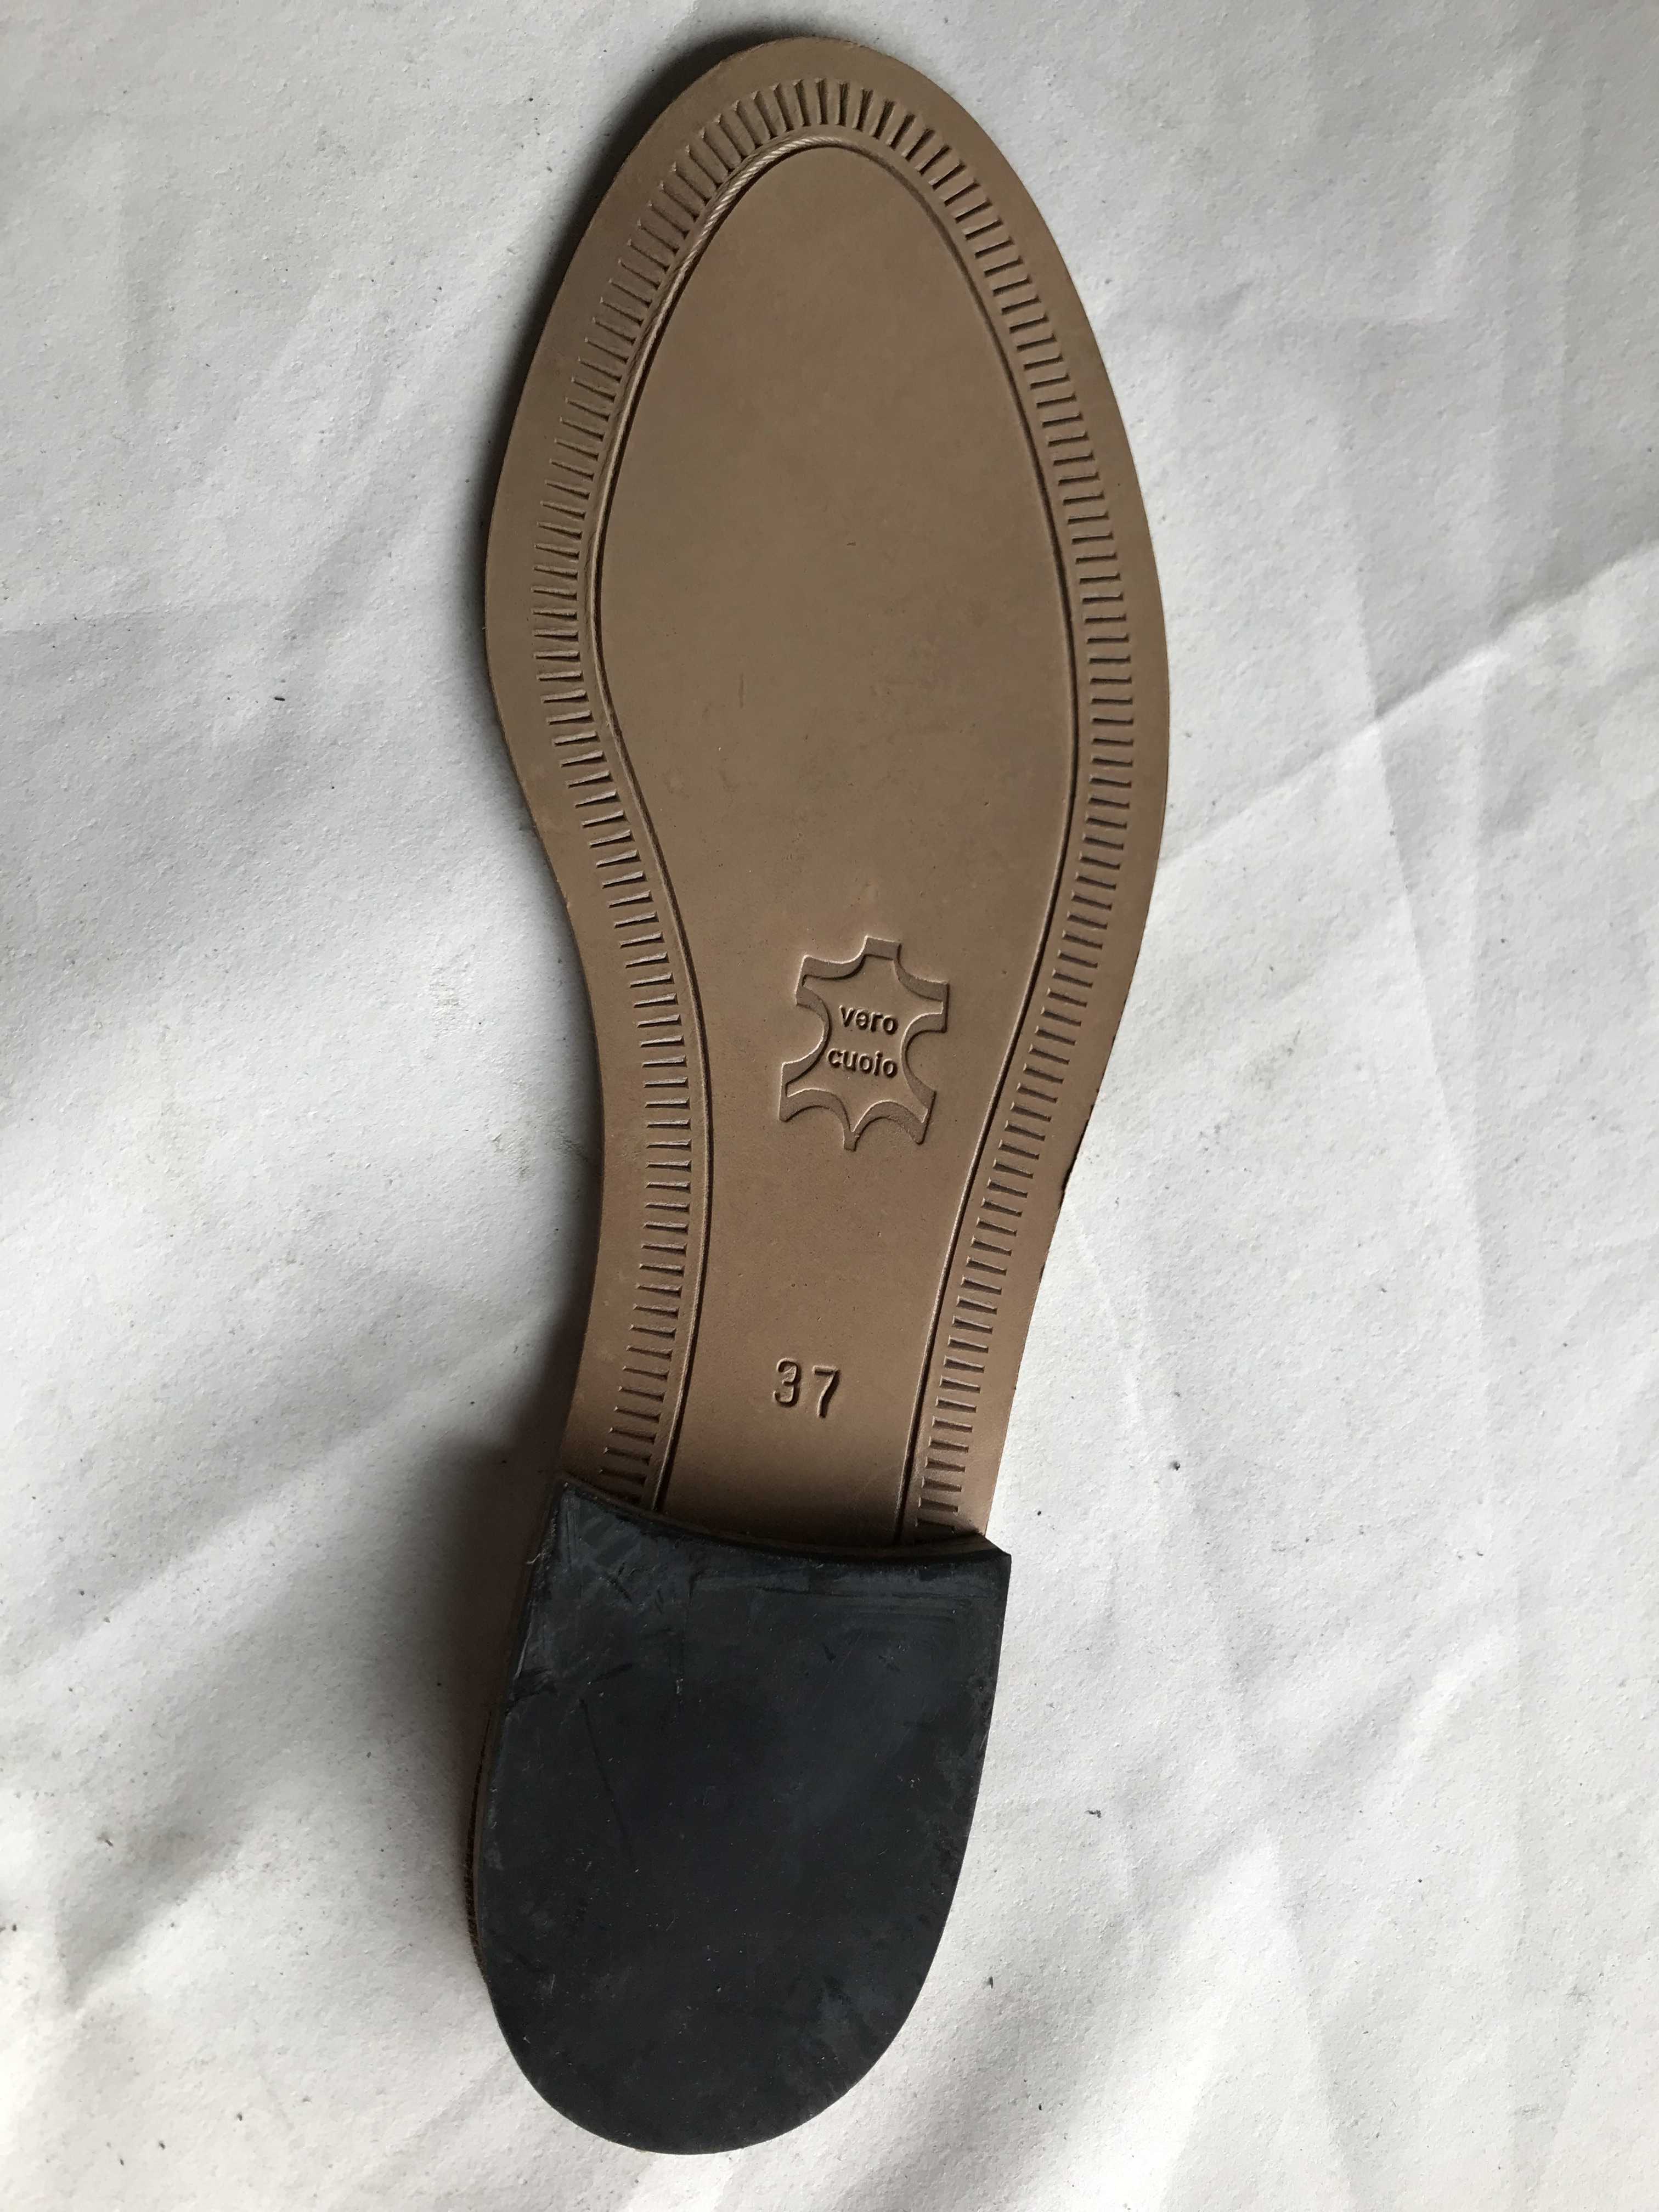 Suola in cuoio per sandali o infradito donna – IF5 in vendita - foto 1